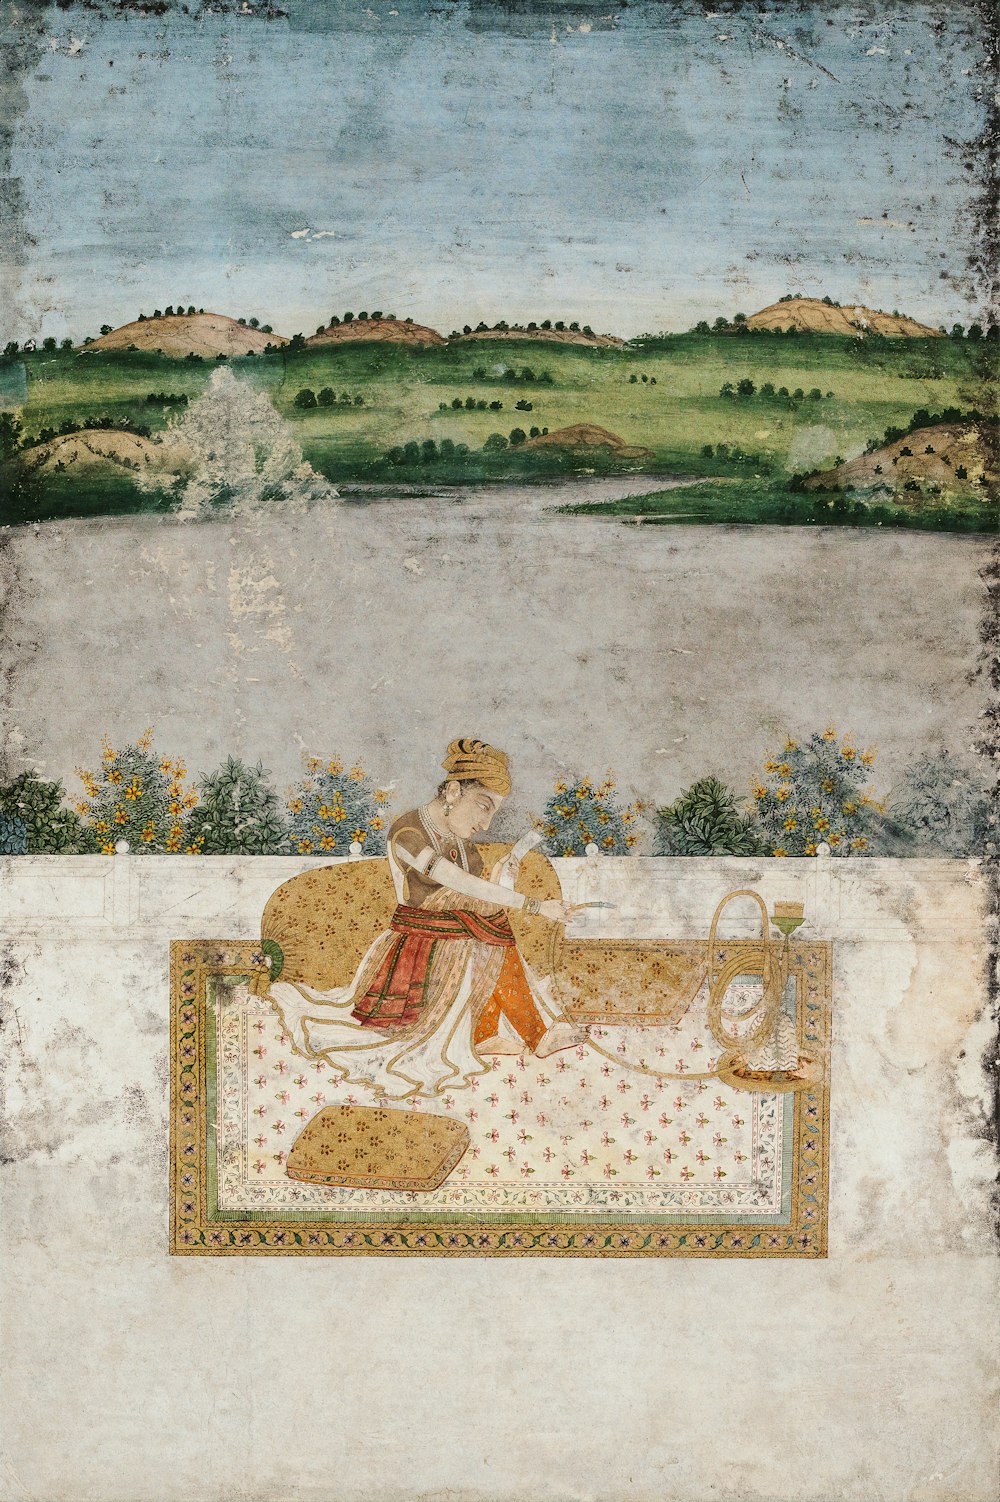 Femme en robe blanche et rouge assise sur la peinture de tapis floral marron et blanc